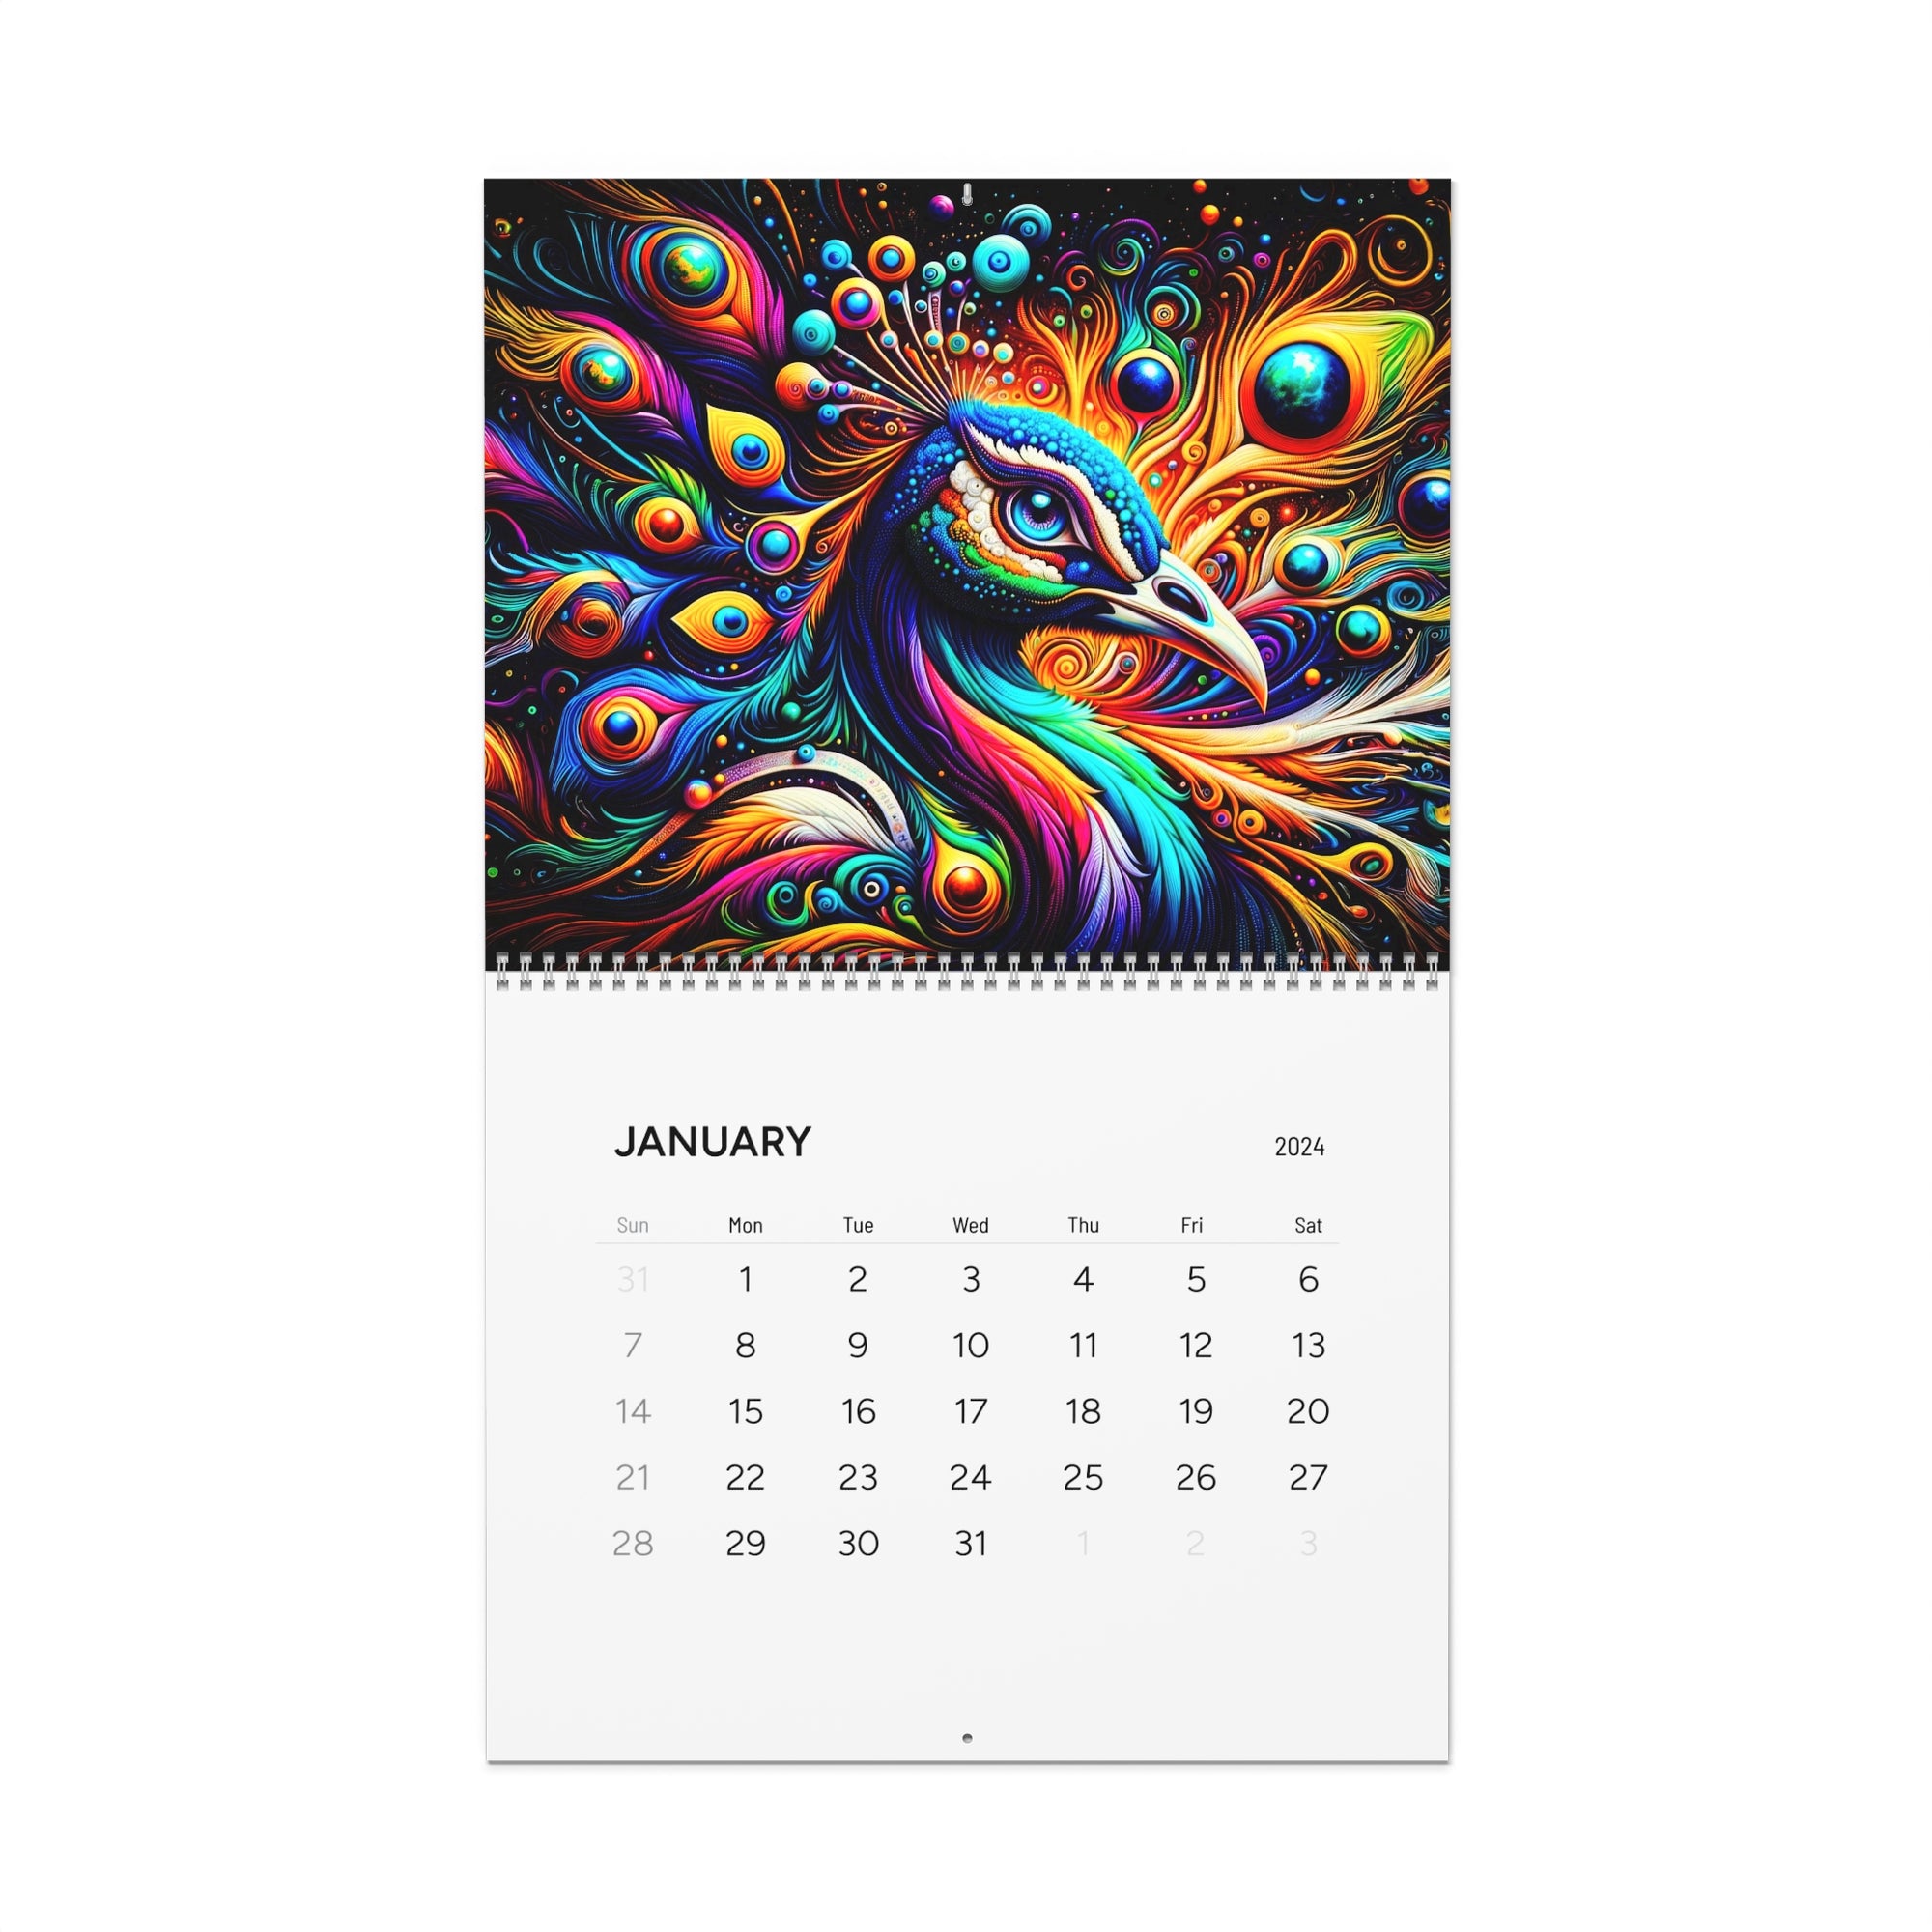 Calendario de majestad artística de plumas etéreas (2024)